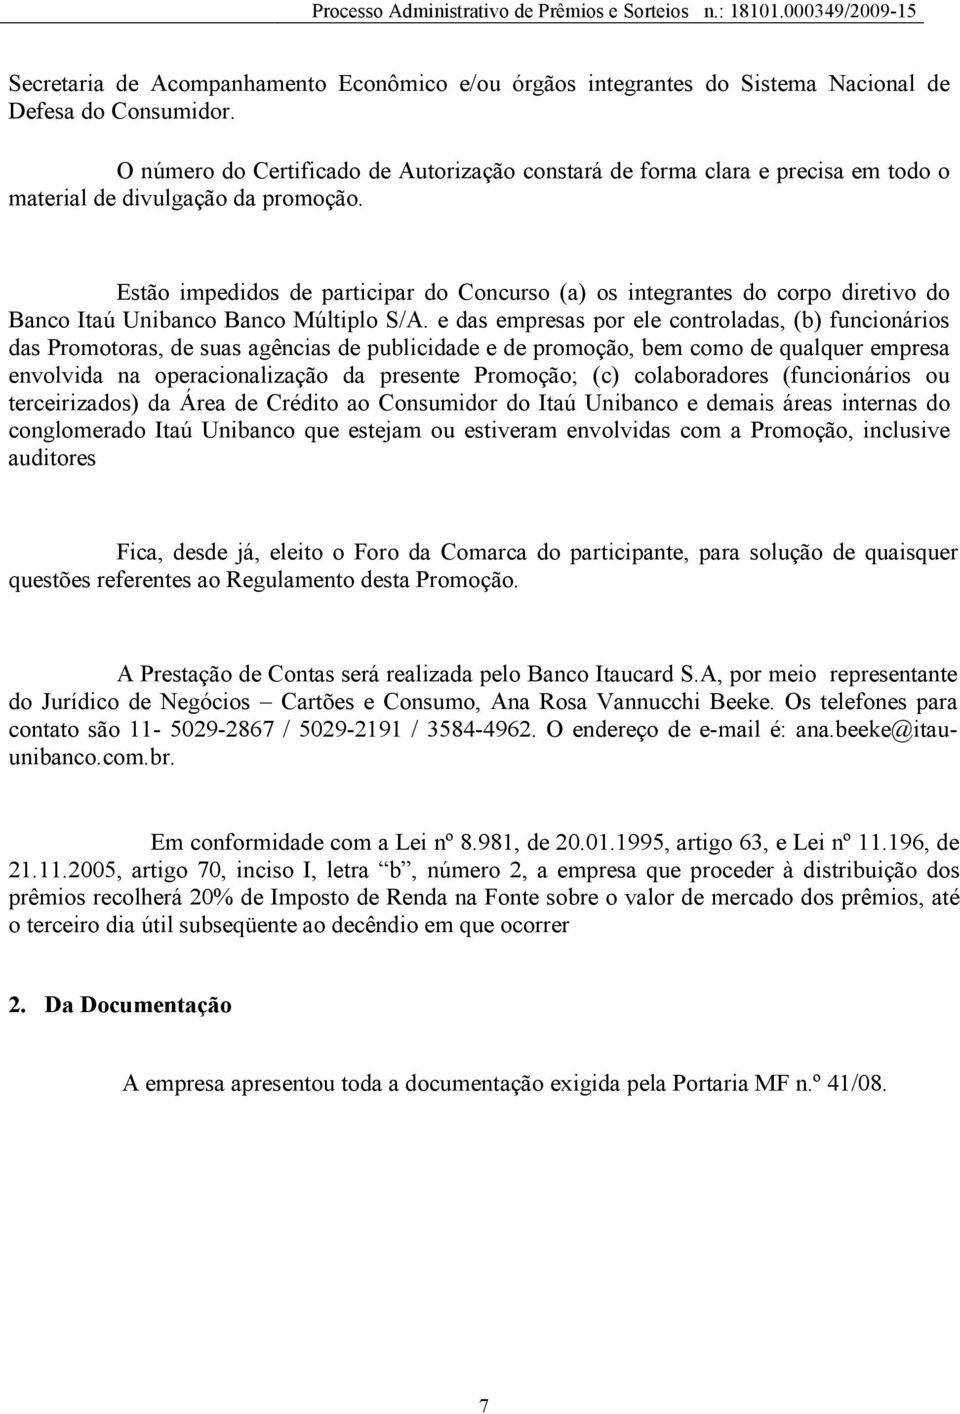 Estão impedidos de participar do Concurso (a) os integrantes do corpo diretivo do Banco Itaú Unibanco Banco Múltiplo S/A.